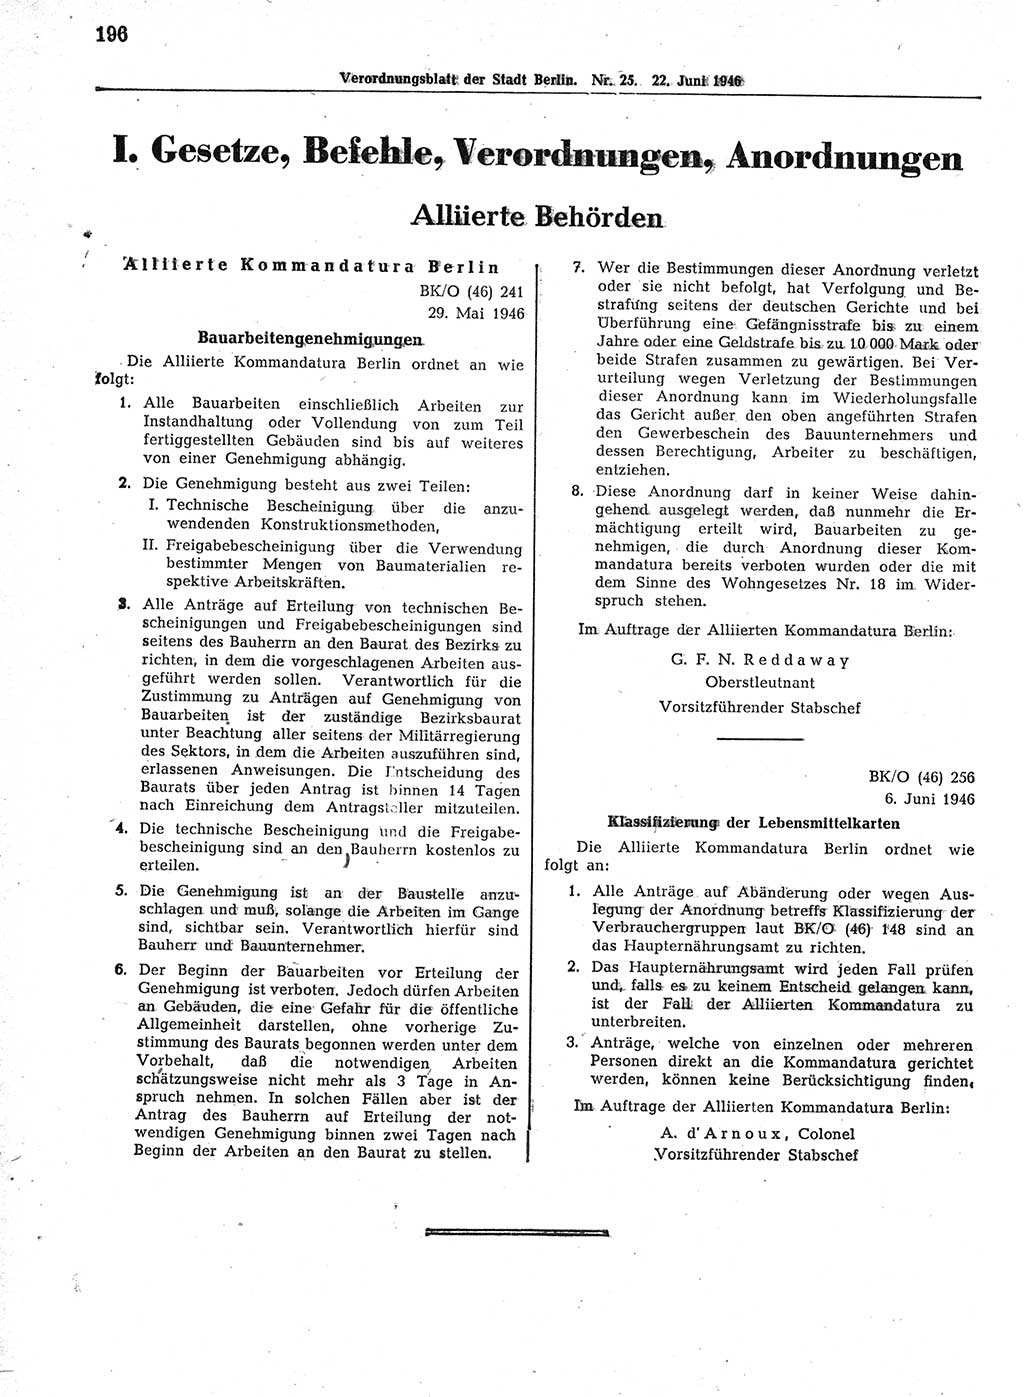 Verordnungsblatt (VOBl.) der Stadt Berlin, für Groß-Berlin 1946, Seite 196 (VOBl. Bln. 1946, S. 196)